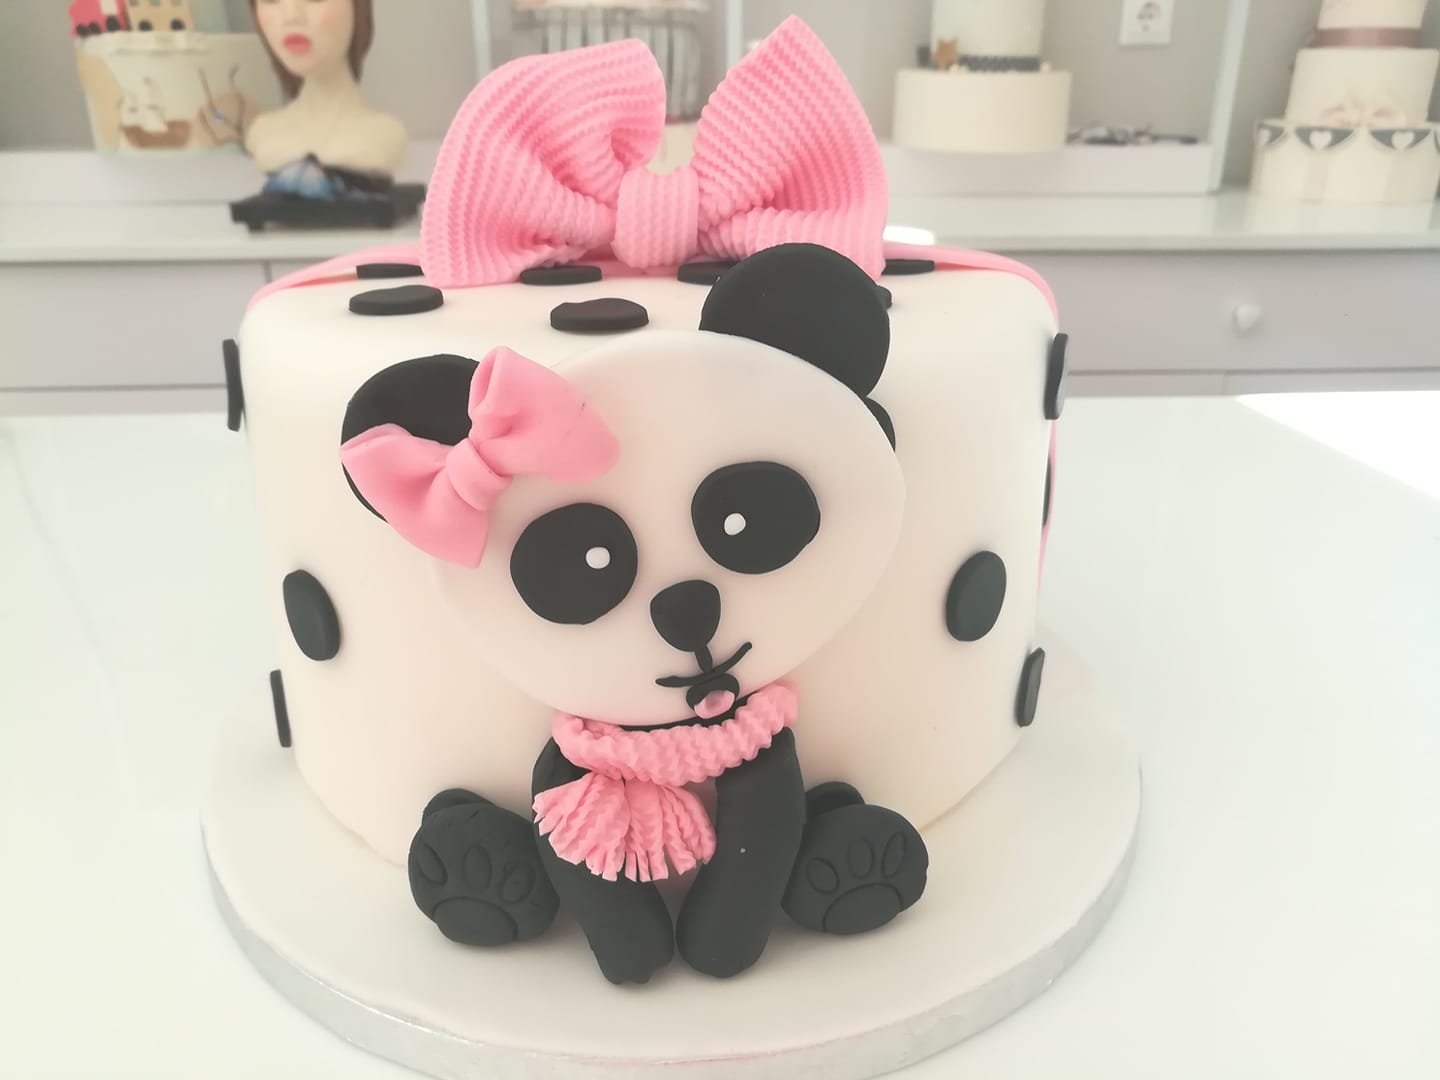 τούρτα από ζαχαρόπαστα panda ζώο ζούγκλας πάντα, Ζαχαροπλαστείο καλαμάτα madame charlotte, τούρτες γεννεθλίων γάμου βάπτησης παιδικές θεματικές birthday theme party cake 2d 3d confectionery patisserie kalamata